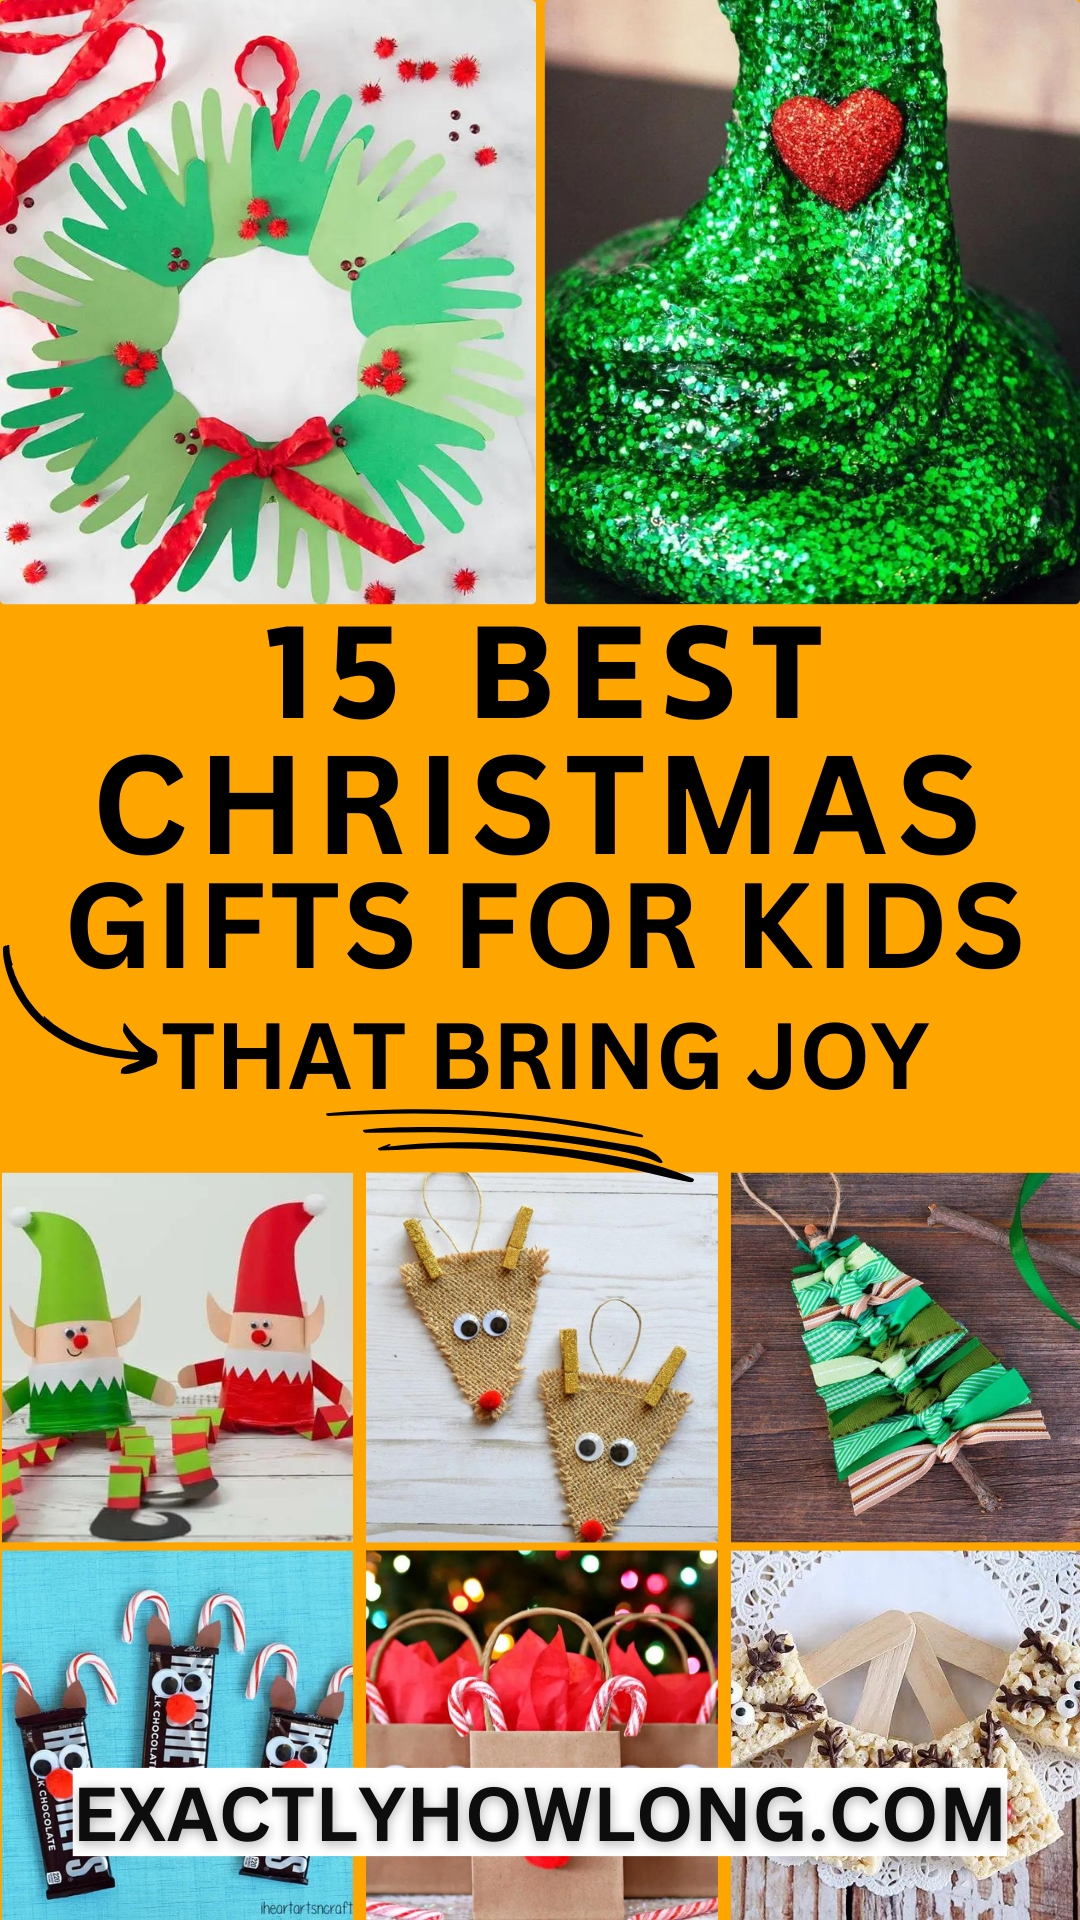 Presentes de Natal DIY baratos para as crianças criarem com orçamento limitado